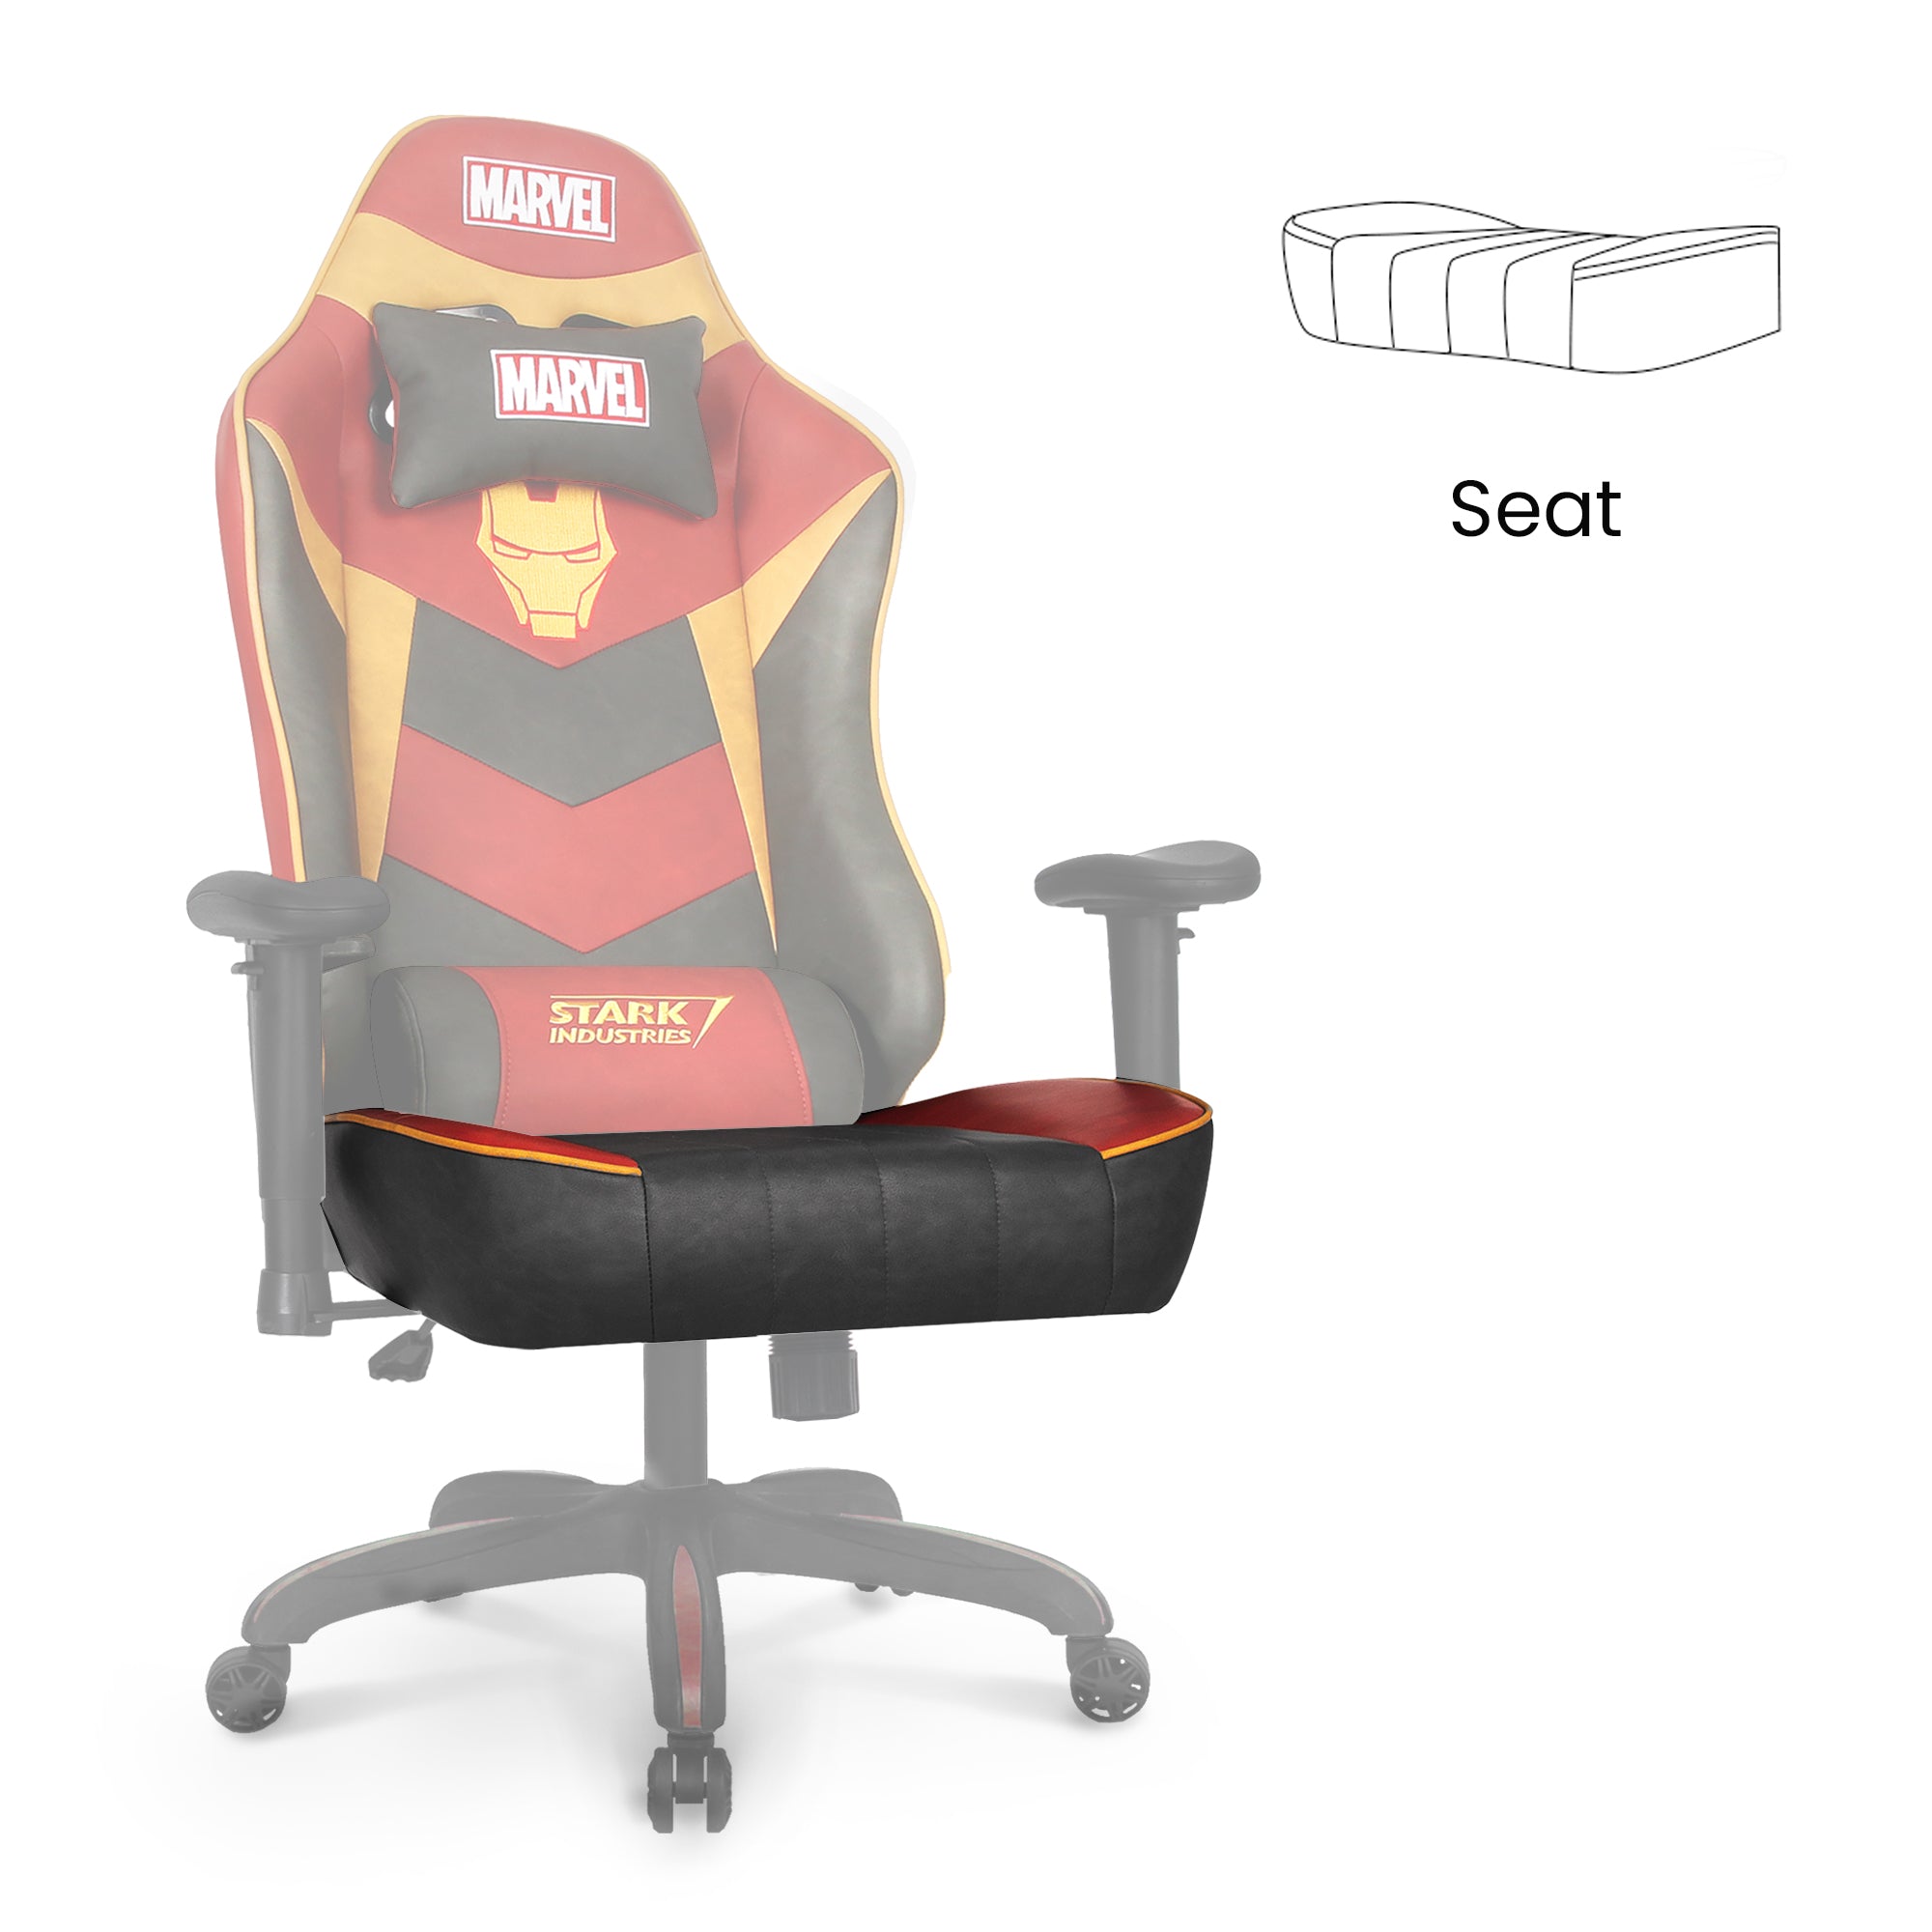 [part] RAP Seat